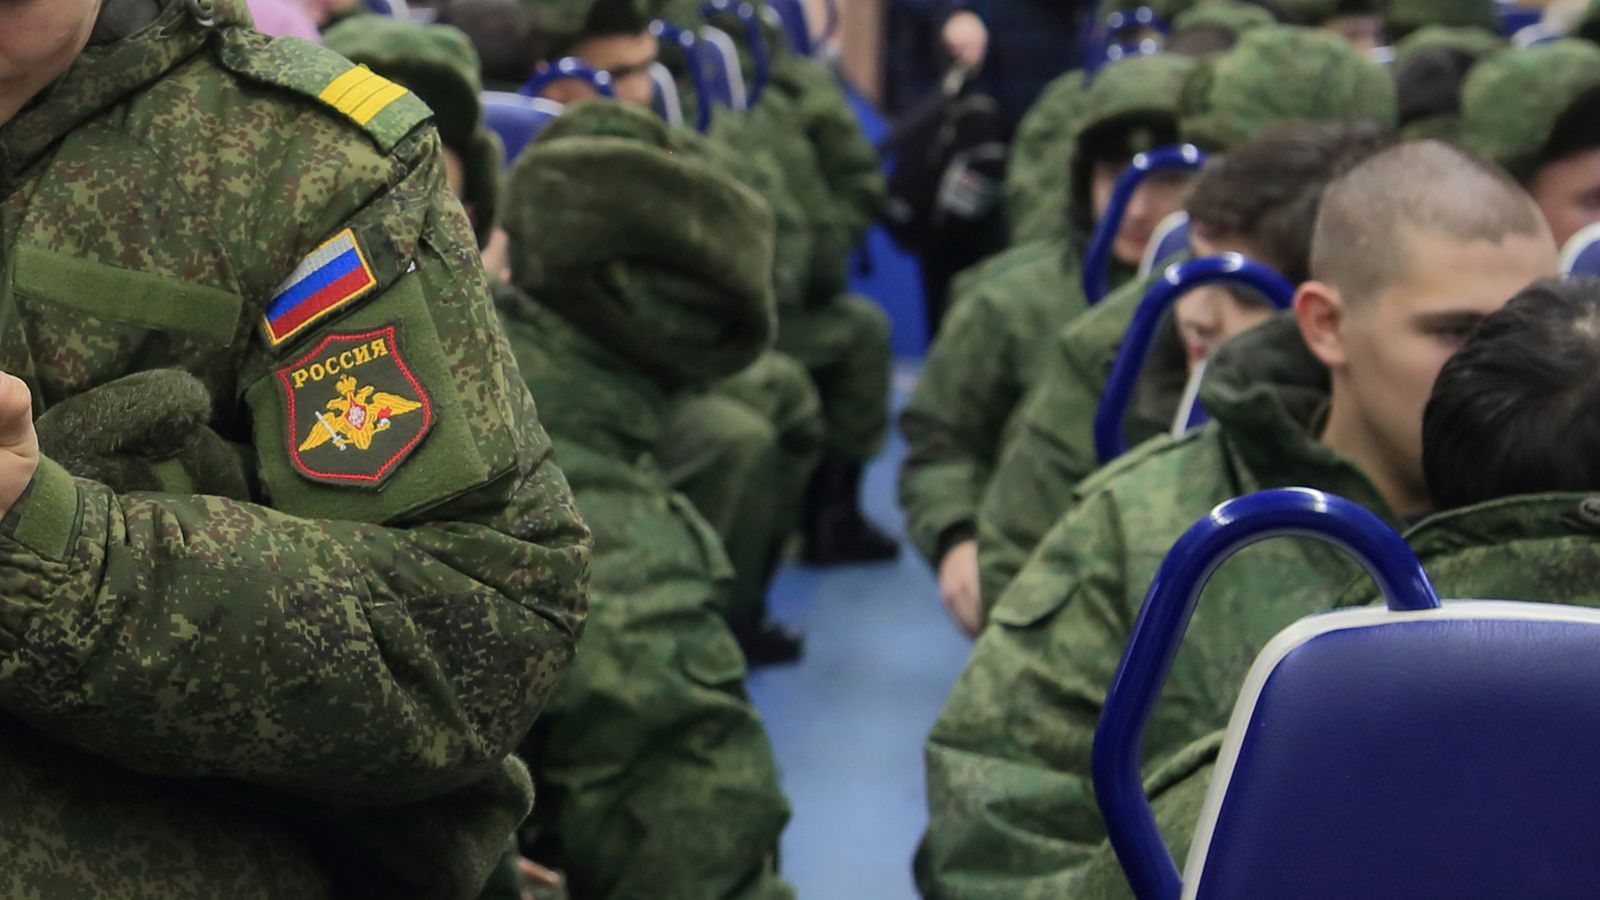 "Боевого опыта ноль", - чиновник из мэрии Москвы ликвидирован в Украине сразу после мобилизации